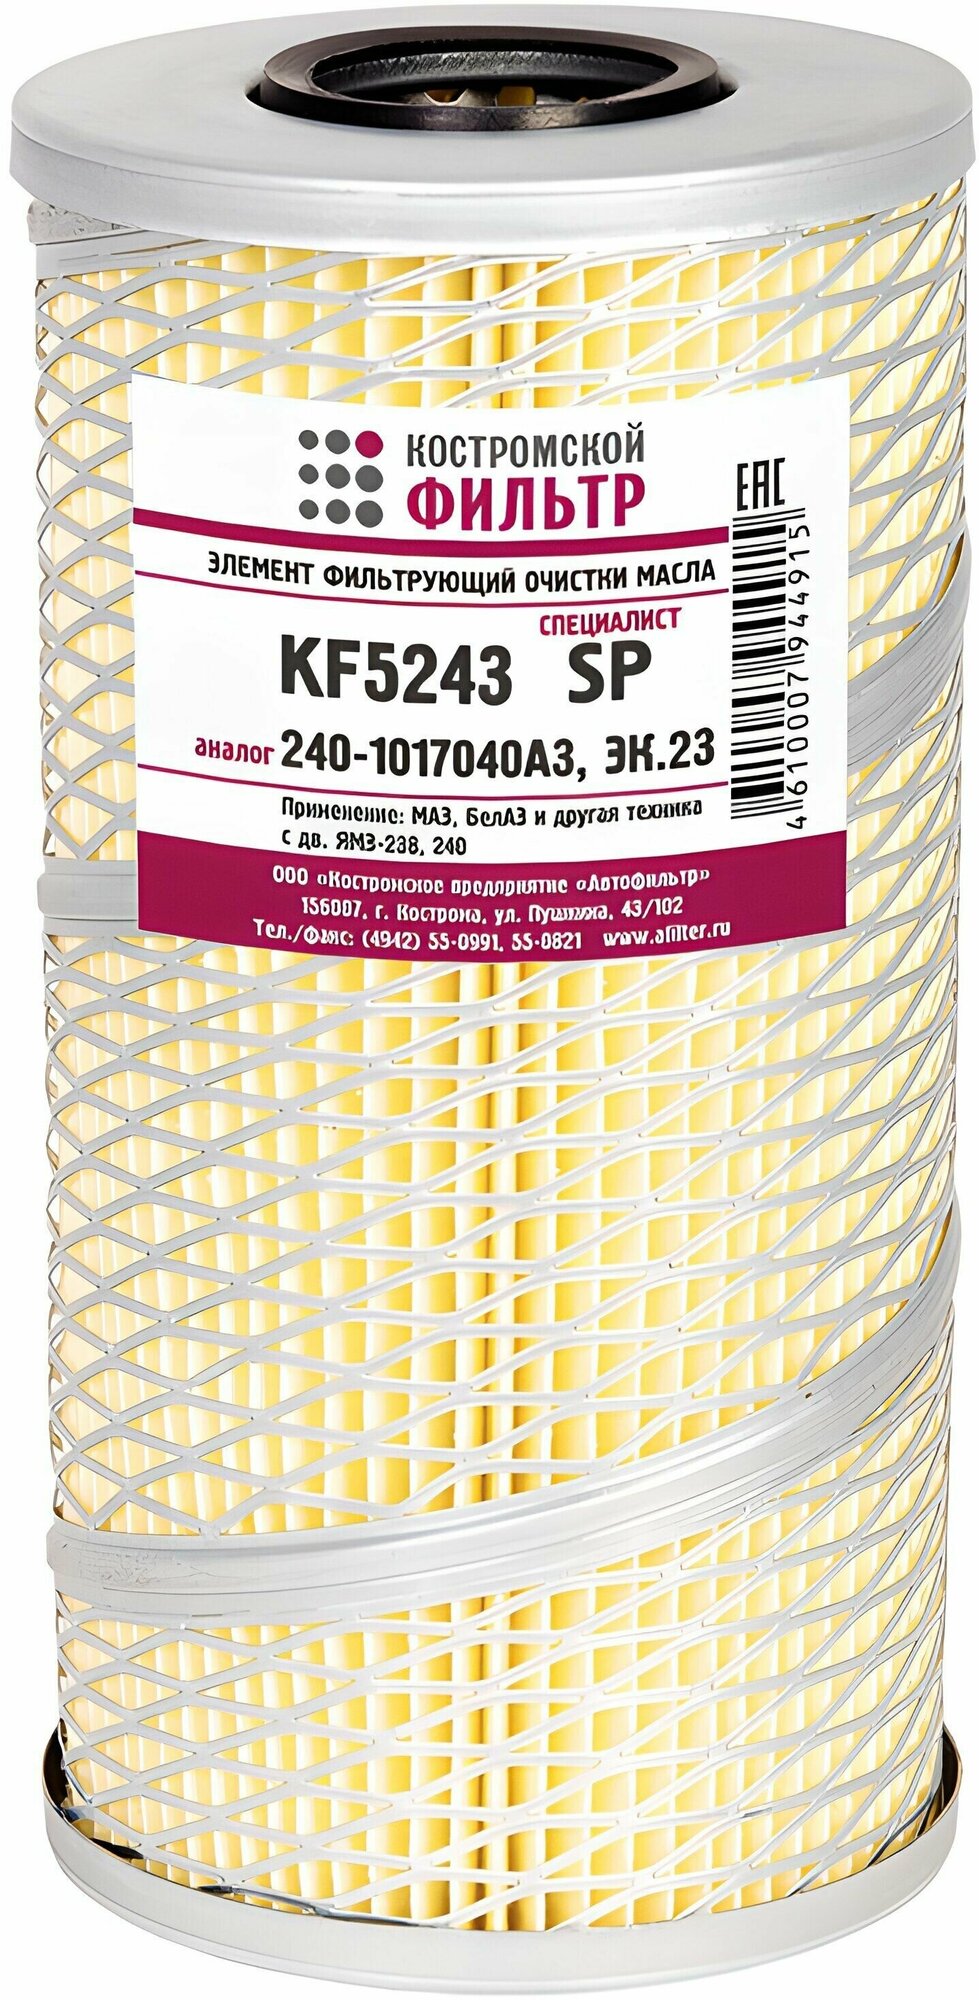 Фильтр масляный 240-1017040-А3 с двумя прокладками "Специалист", "Костромской фильтр", KF5243SP